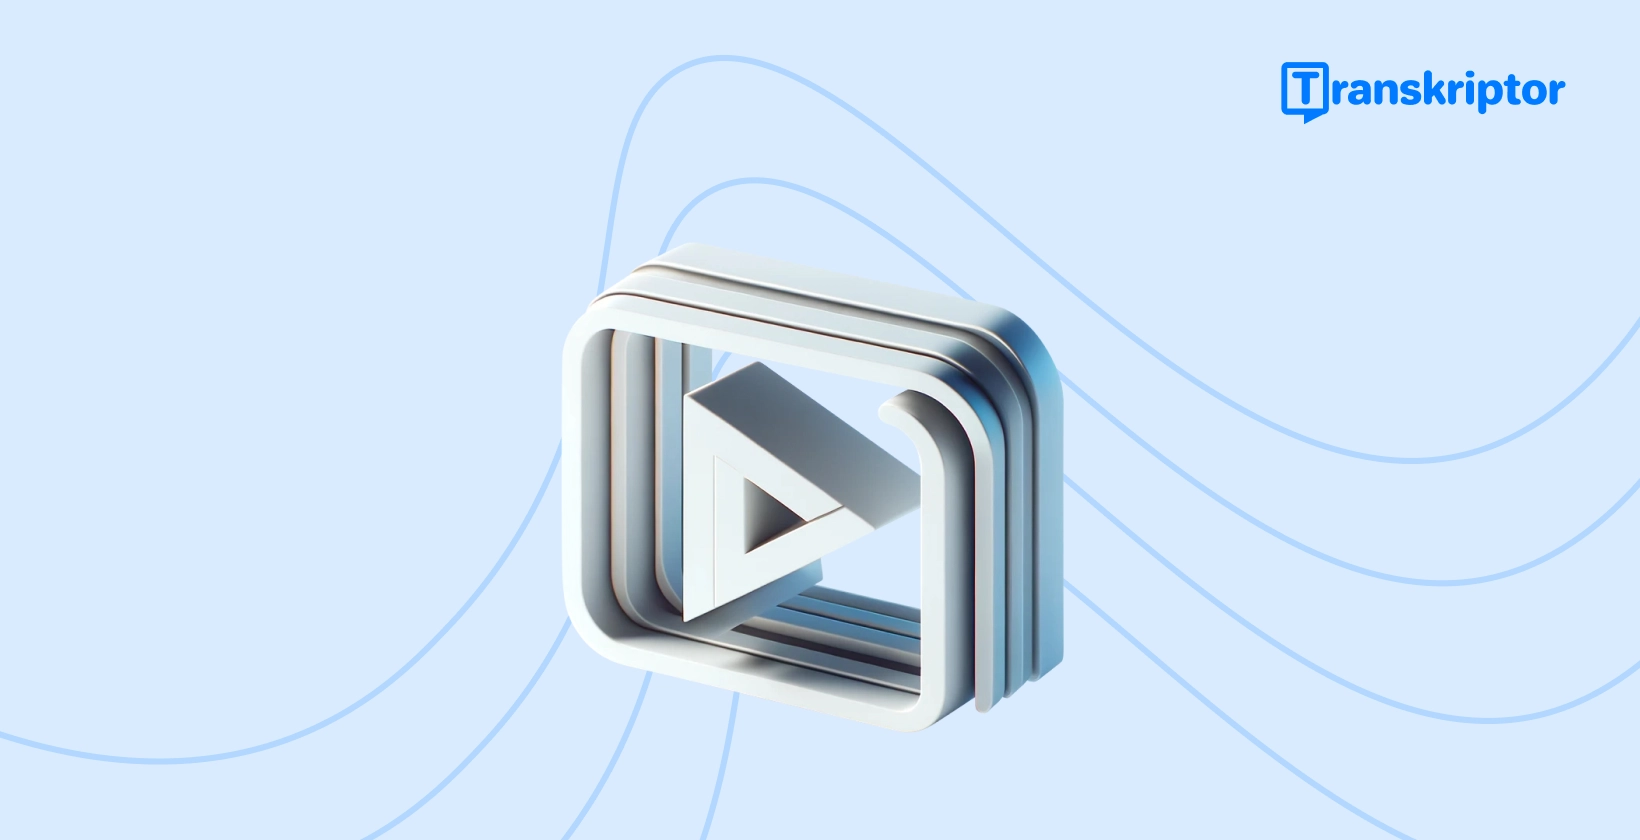 Βήμα προς βήμα banner εκμάθησης για την προσθήκη υπότιτλων σε βίντεο, με ένα εικονίδιο κουμπιού αναπαραγωγής που συμβολίζει την επεξεργασία βίντεο.